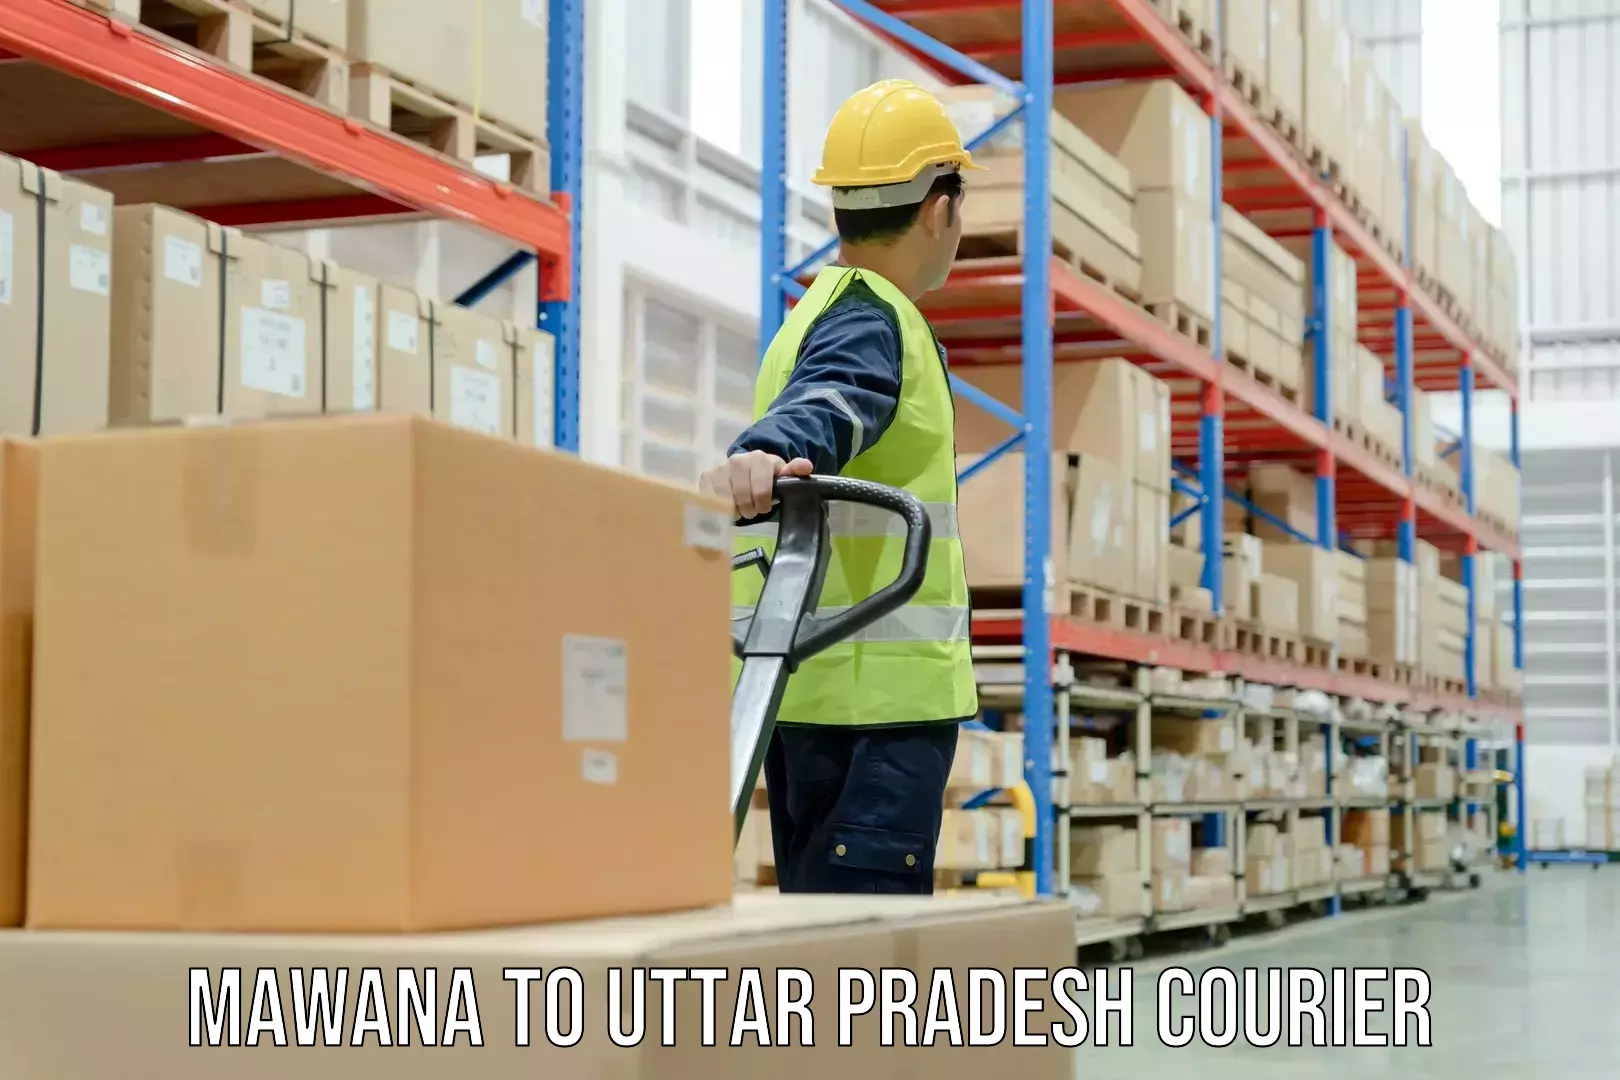 Professional courier handling Mawana to Uttar Pradesh